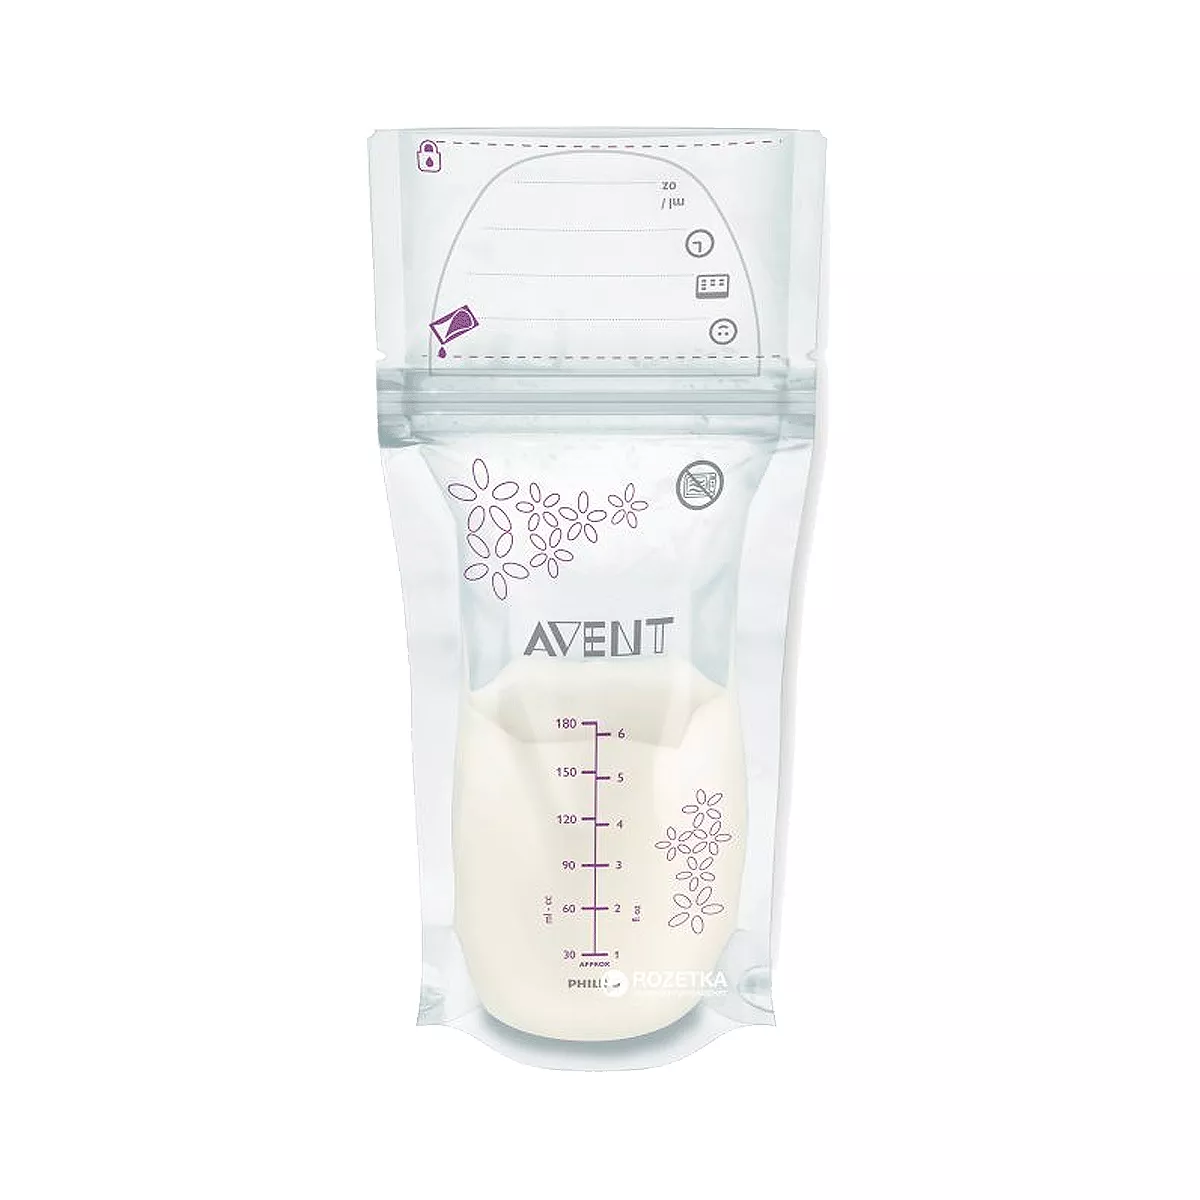 Пакети для хранения грудного молока Avent 25x180мл (SCF603/25)